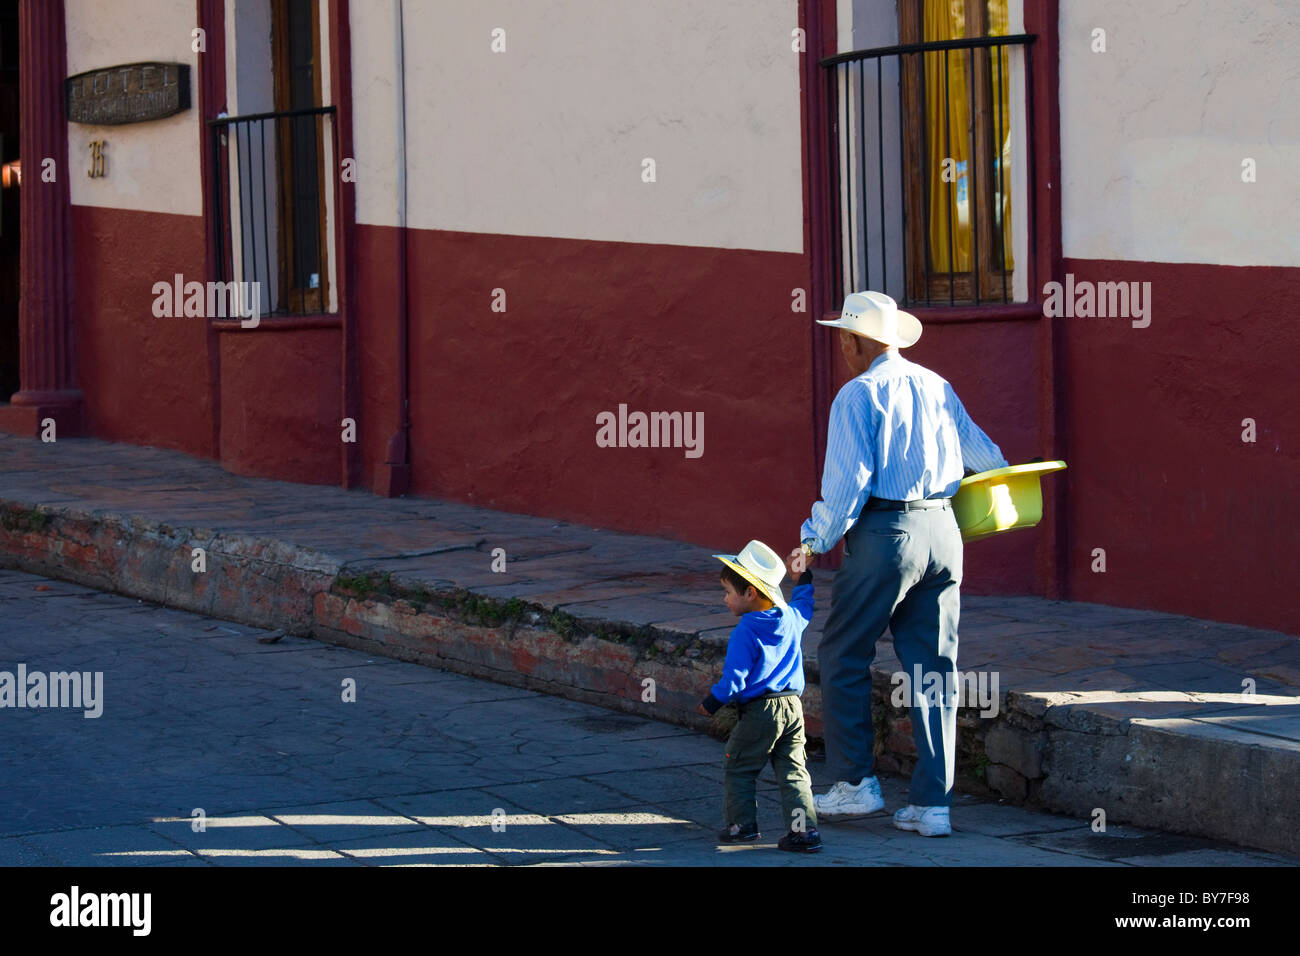 Grandfather and grandson, San Cristobal de las Casas, Chiapas, Mexico Stock Photo